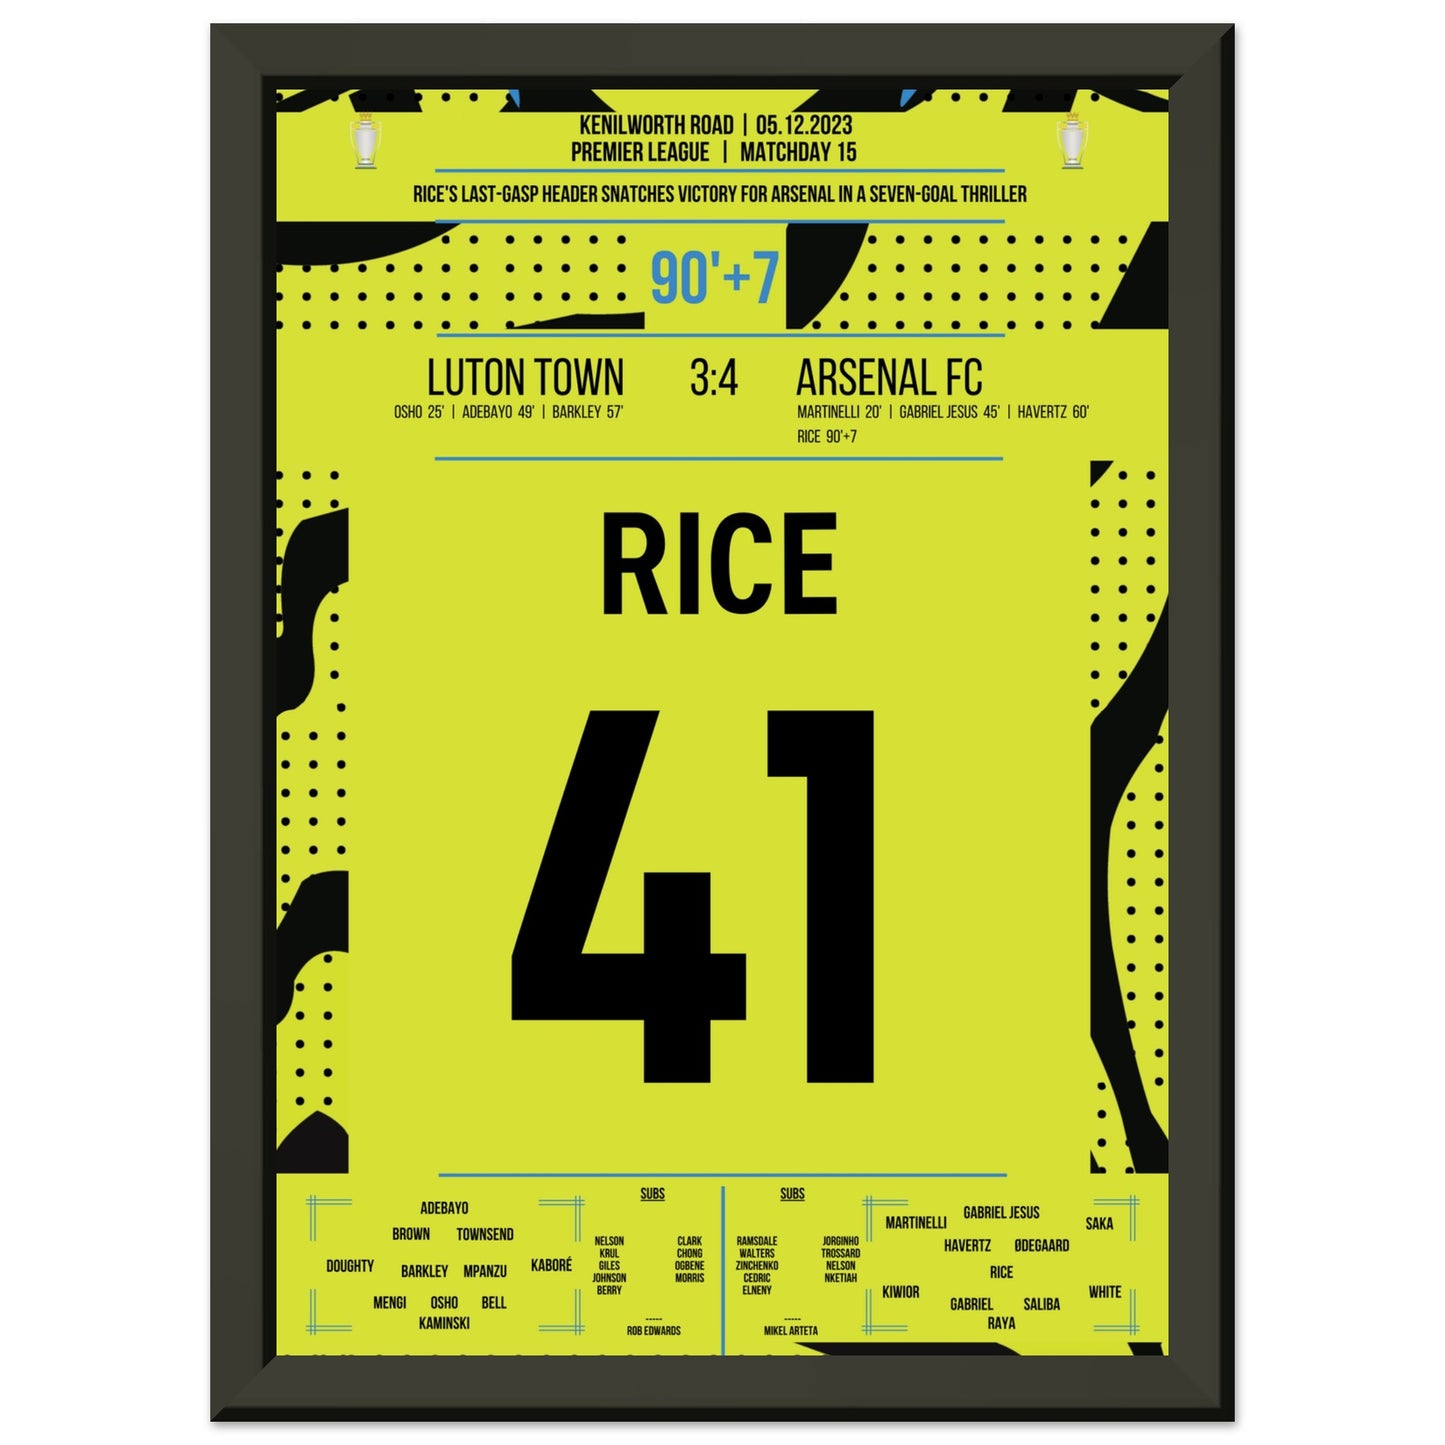 Rice köpft Arsenal in letzter Sekunde zum Auswärtssieg